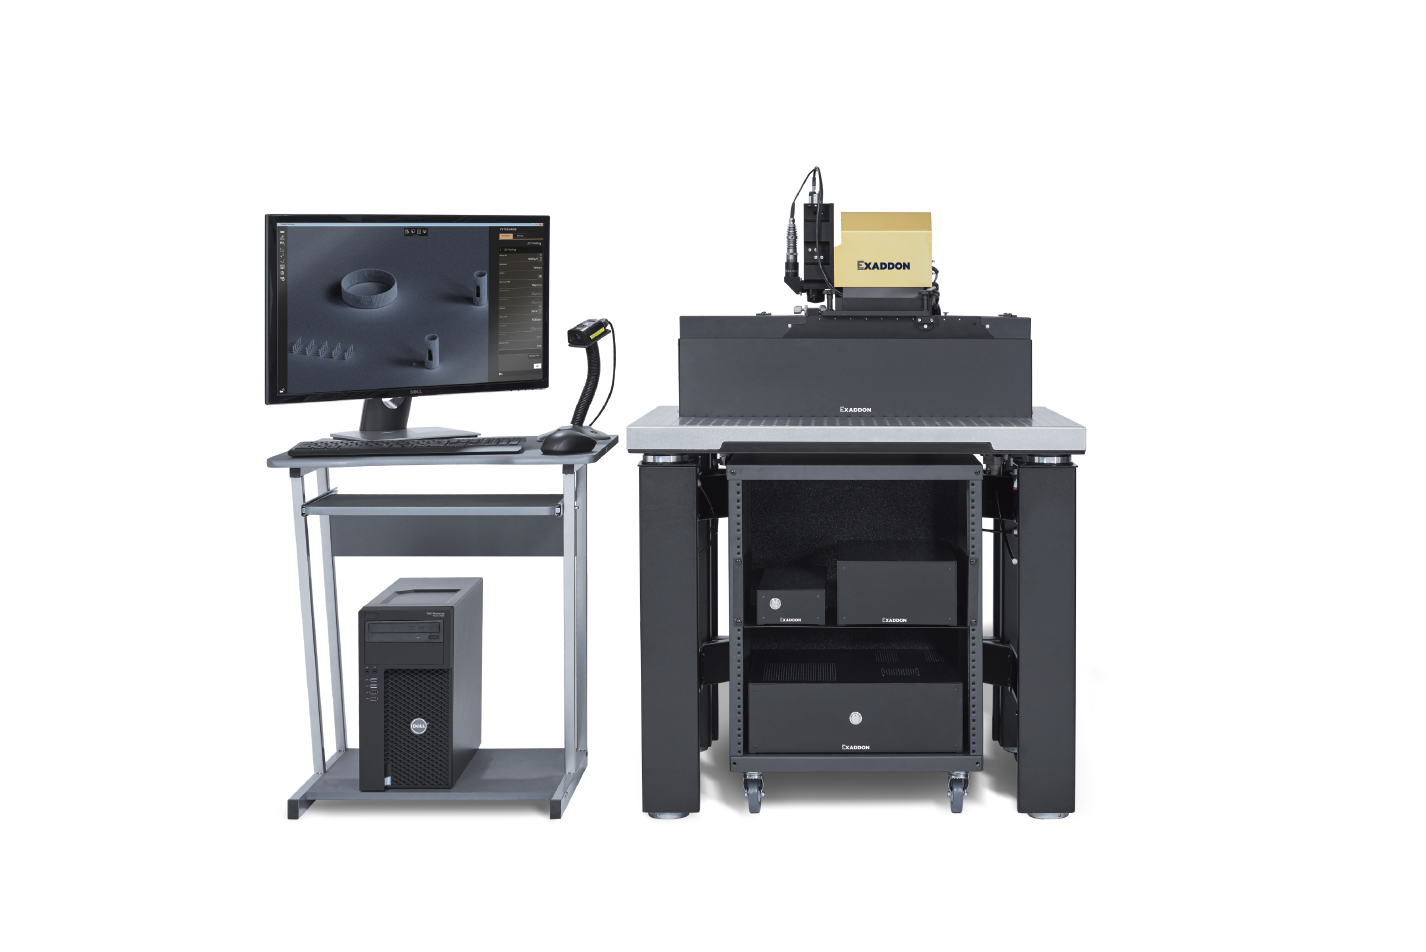 Exaddon AG持续创新技术，电化学沉积技术实现超高分辨率打印